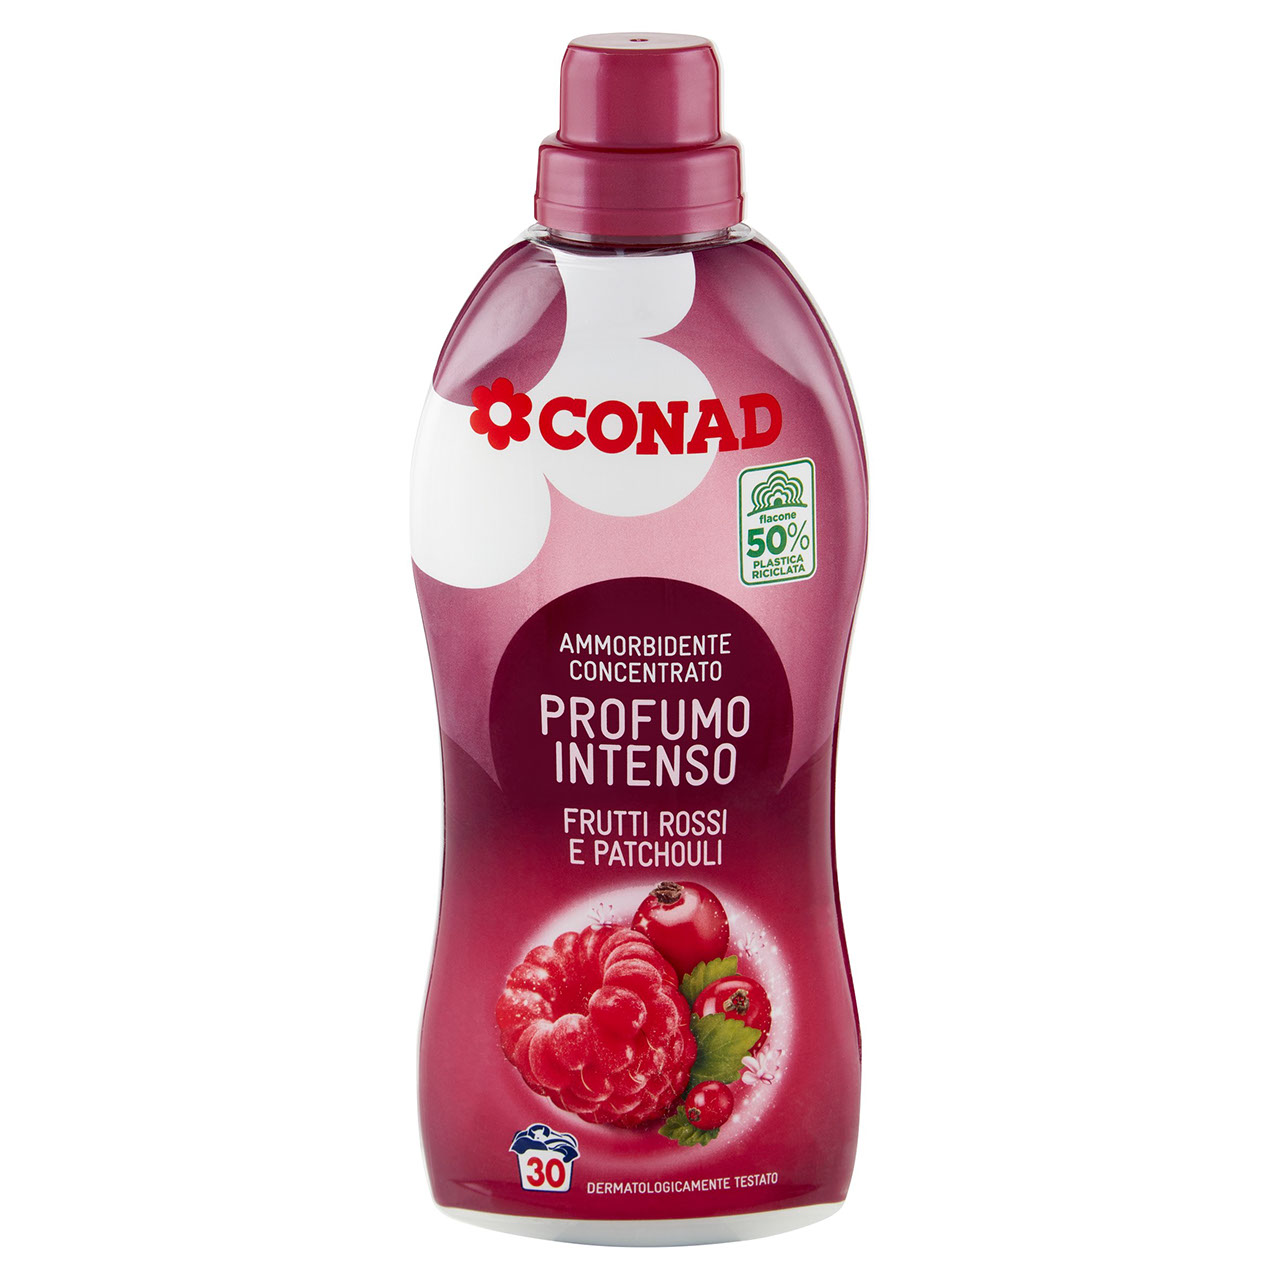 CONAD Ammorbidente Concentrato Profumo Intenso Frutti Rossi e Patchouli 750 ml